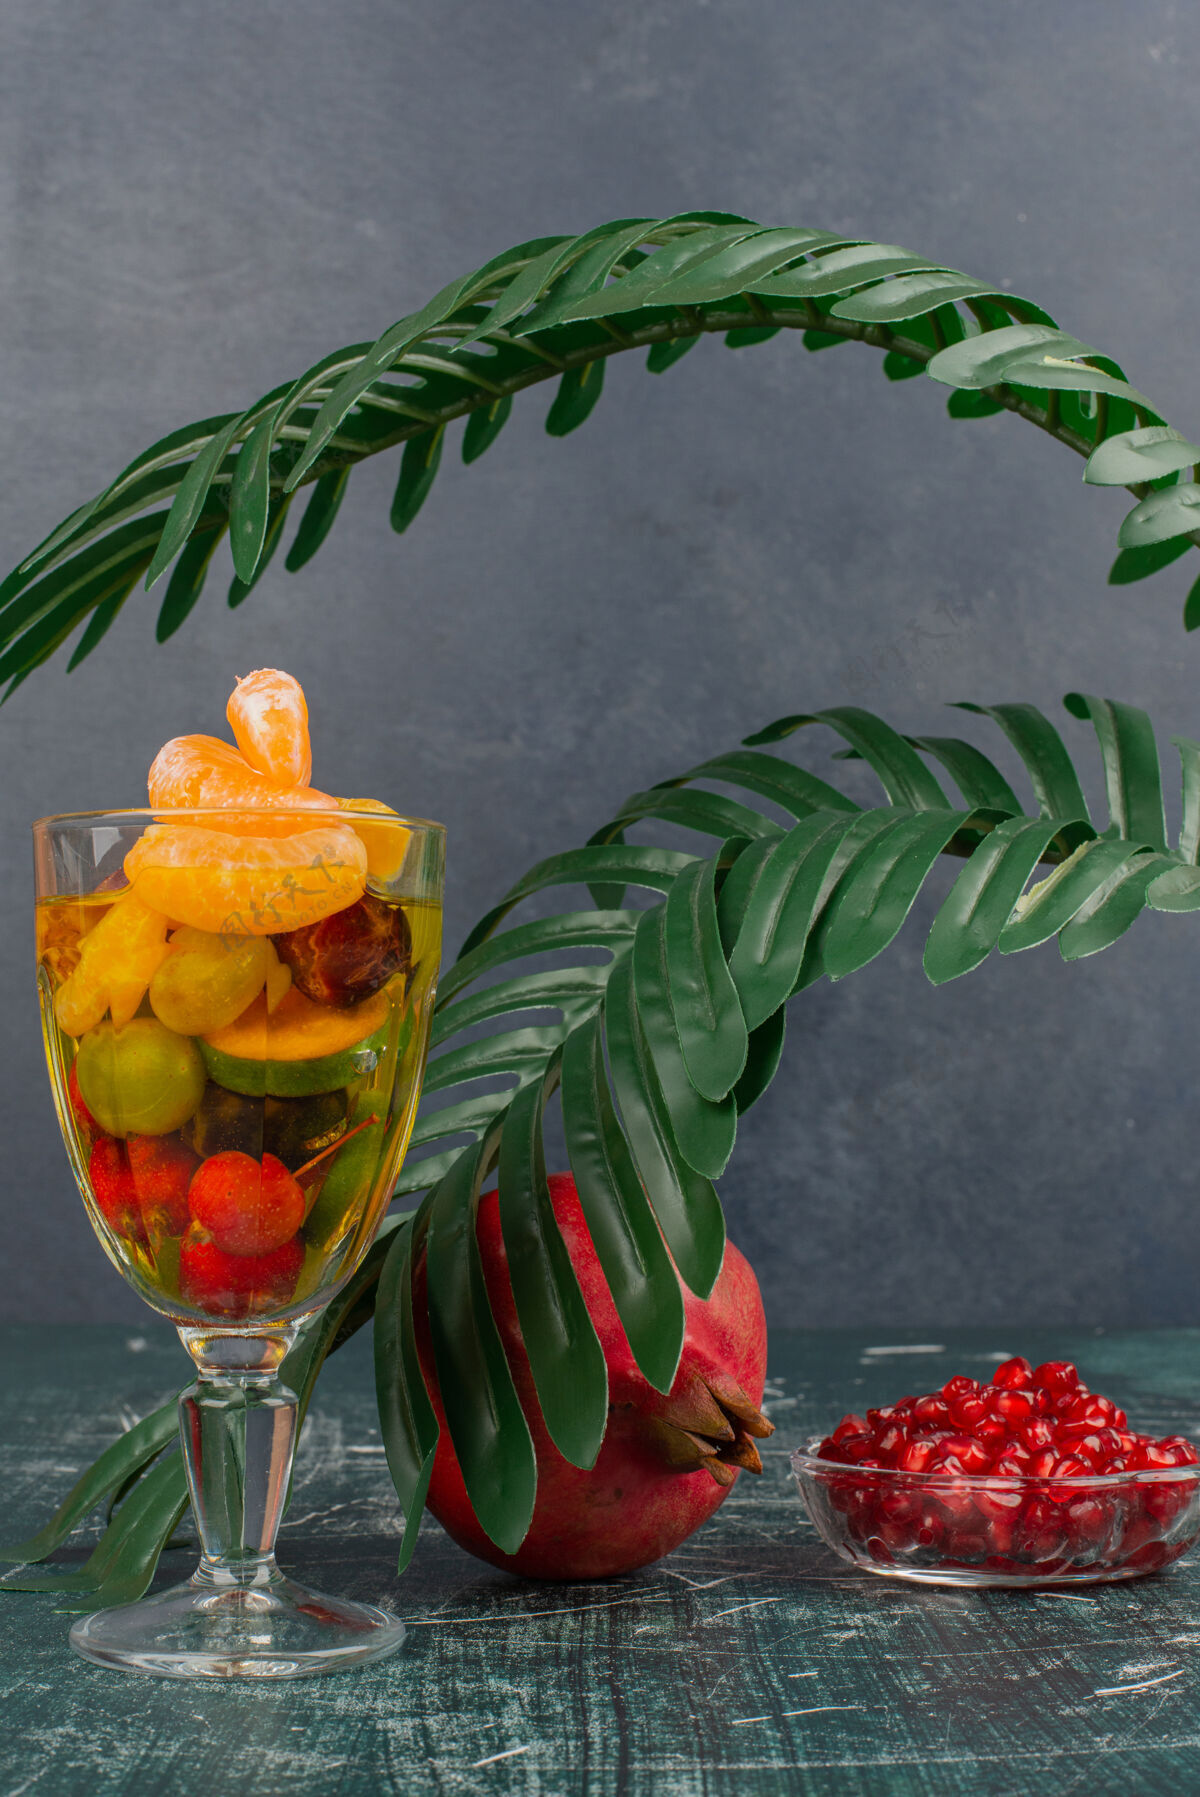 水果大理石桌上放着一杯水果和石榴籽健康种子盘子